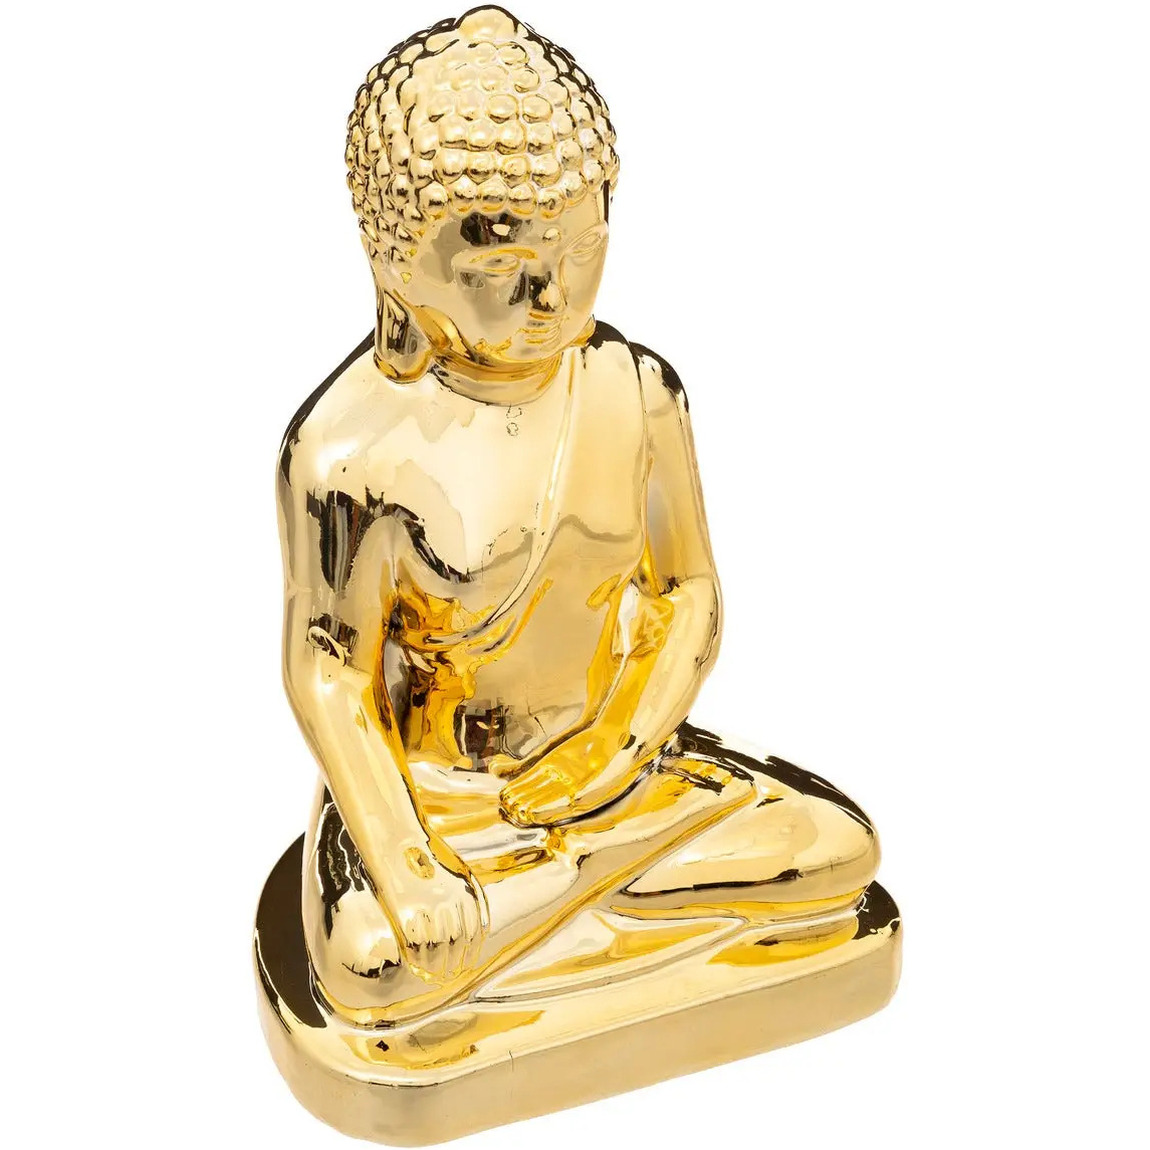 Home decoratie Boeddha beeld goud kleurig 16 x 25 cm voor binnen